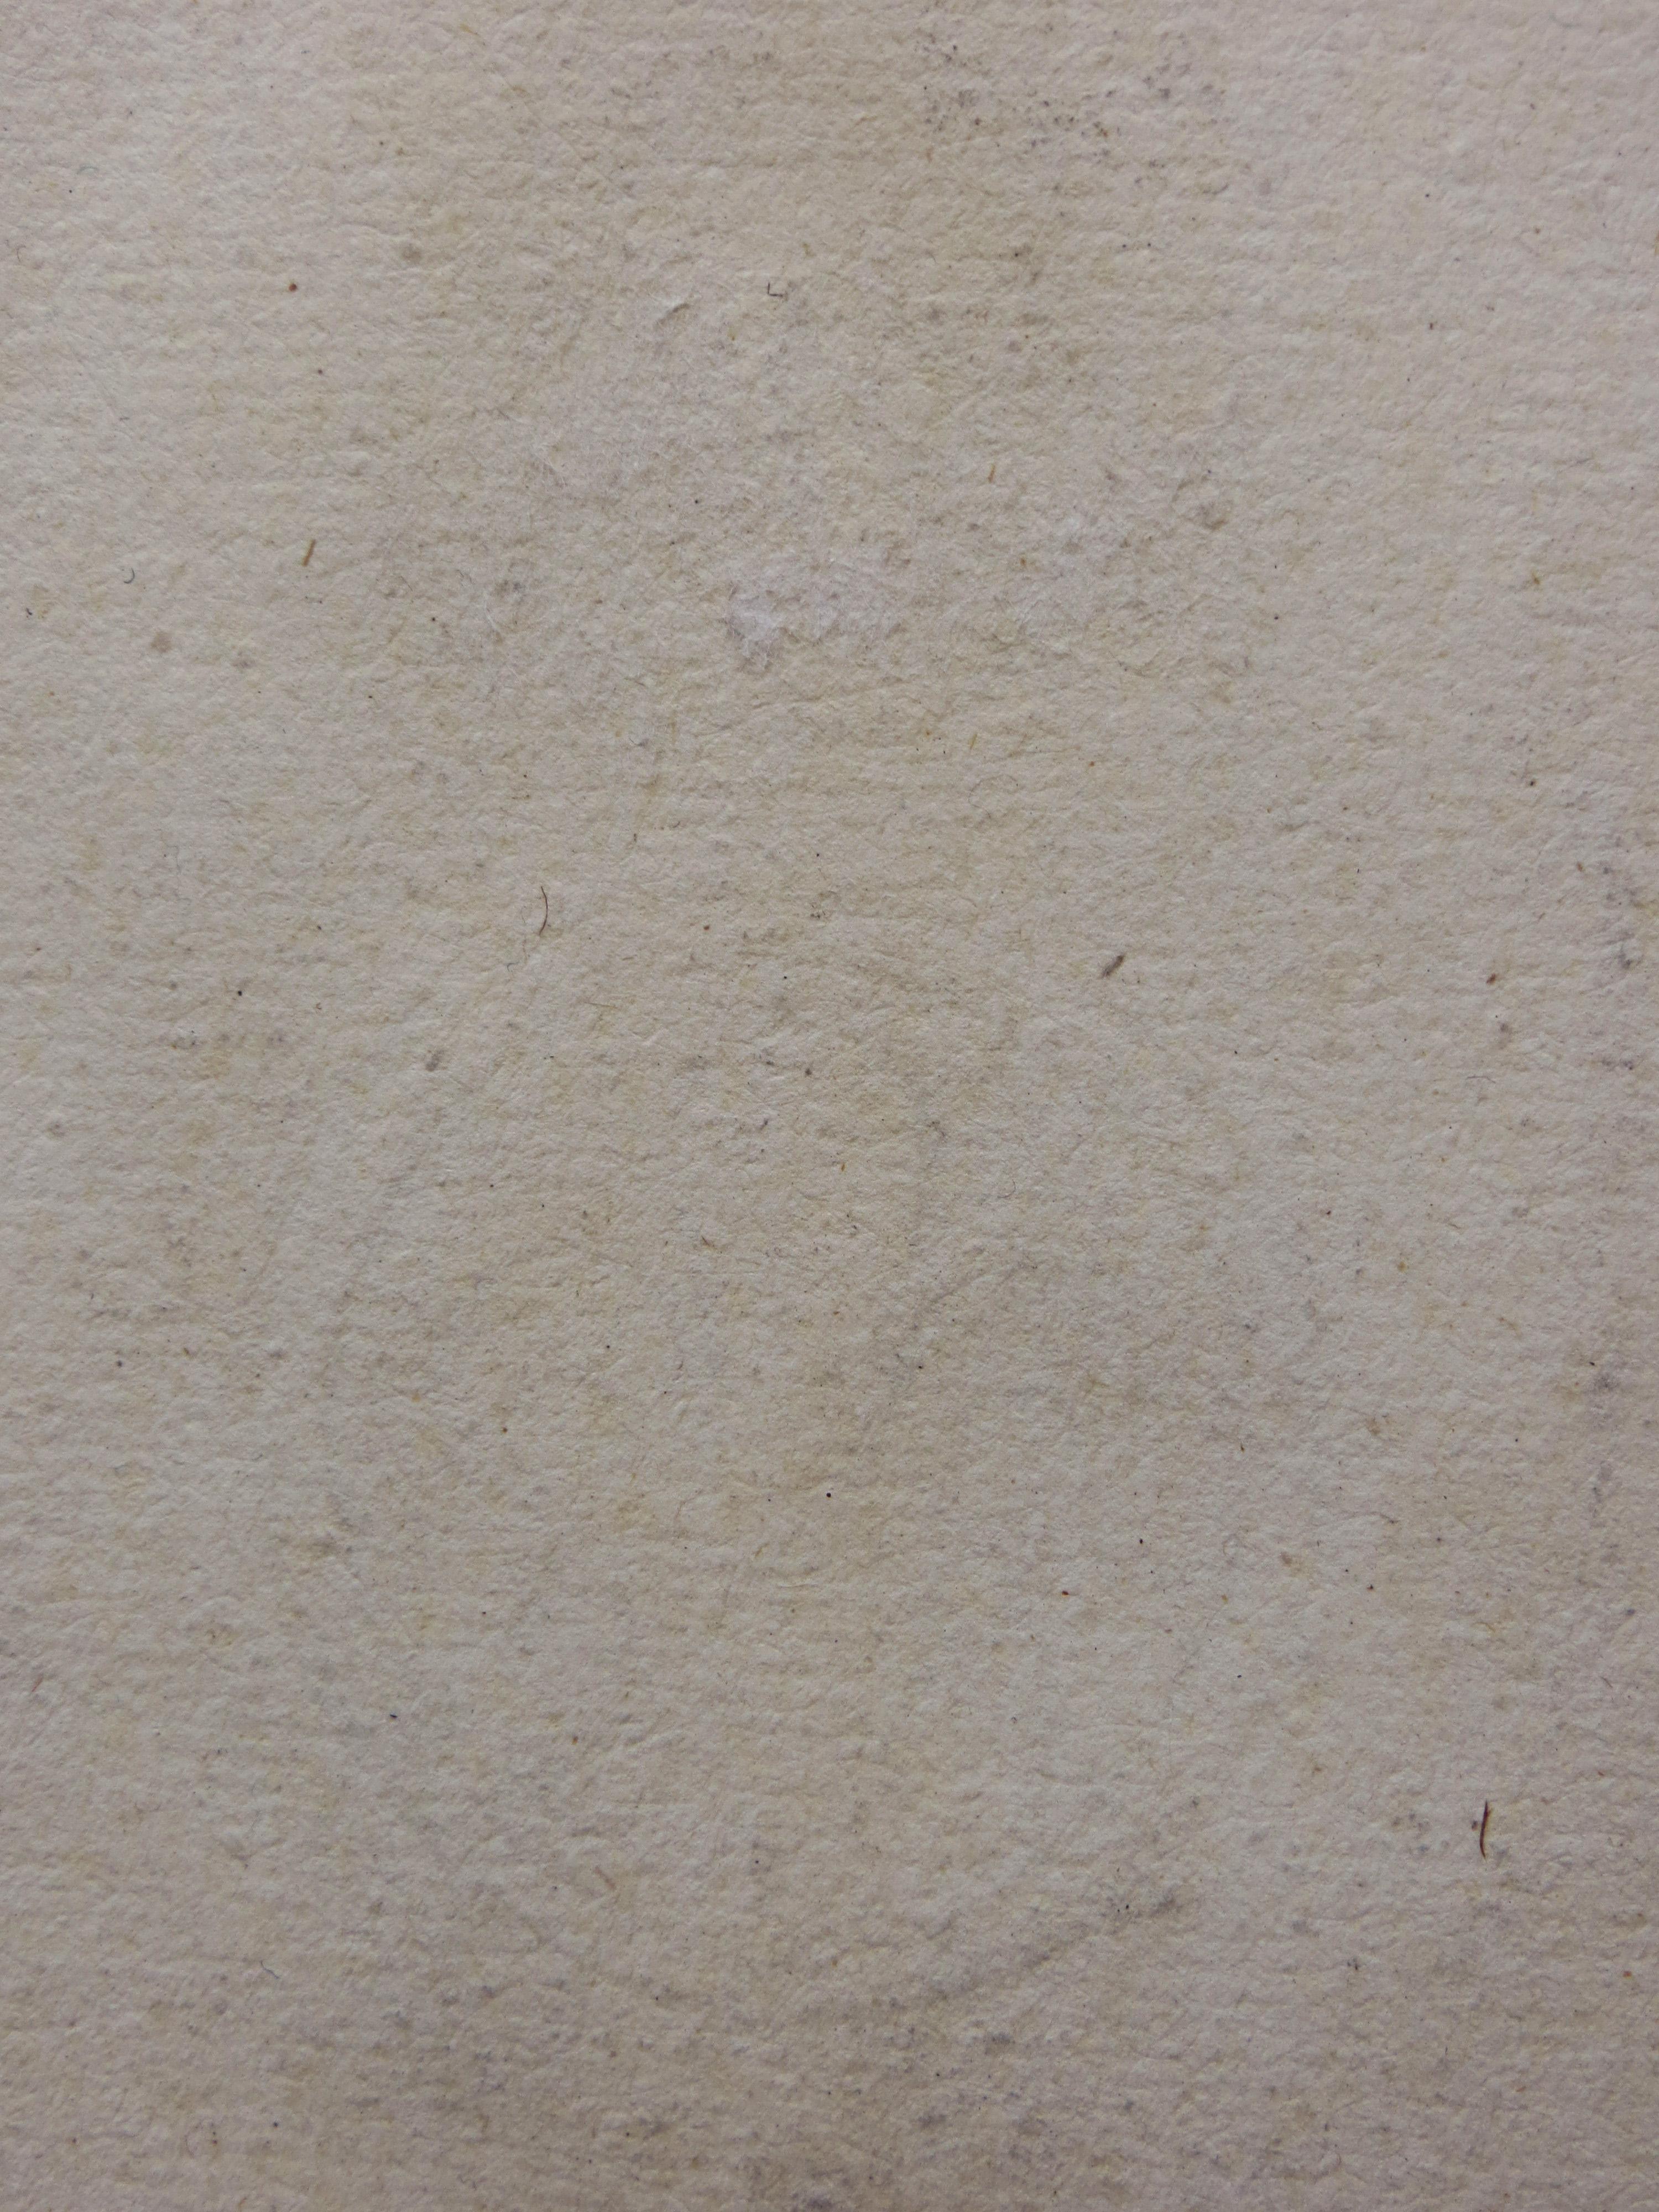 This mid-18th century etching by Giovanni Battista (Giambattista) Piranesi (b. 1720-1778) is titled “Spaccato Interno della Basilica di S. Paolo fuori della Mura” (“Cutaway view of the Interior of the Basilica of San Paolo fuori delle Mura”. It is